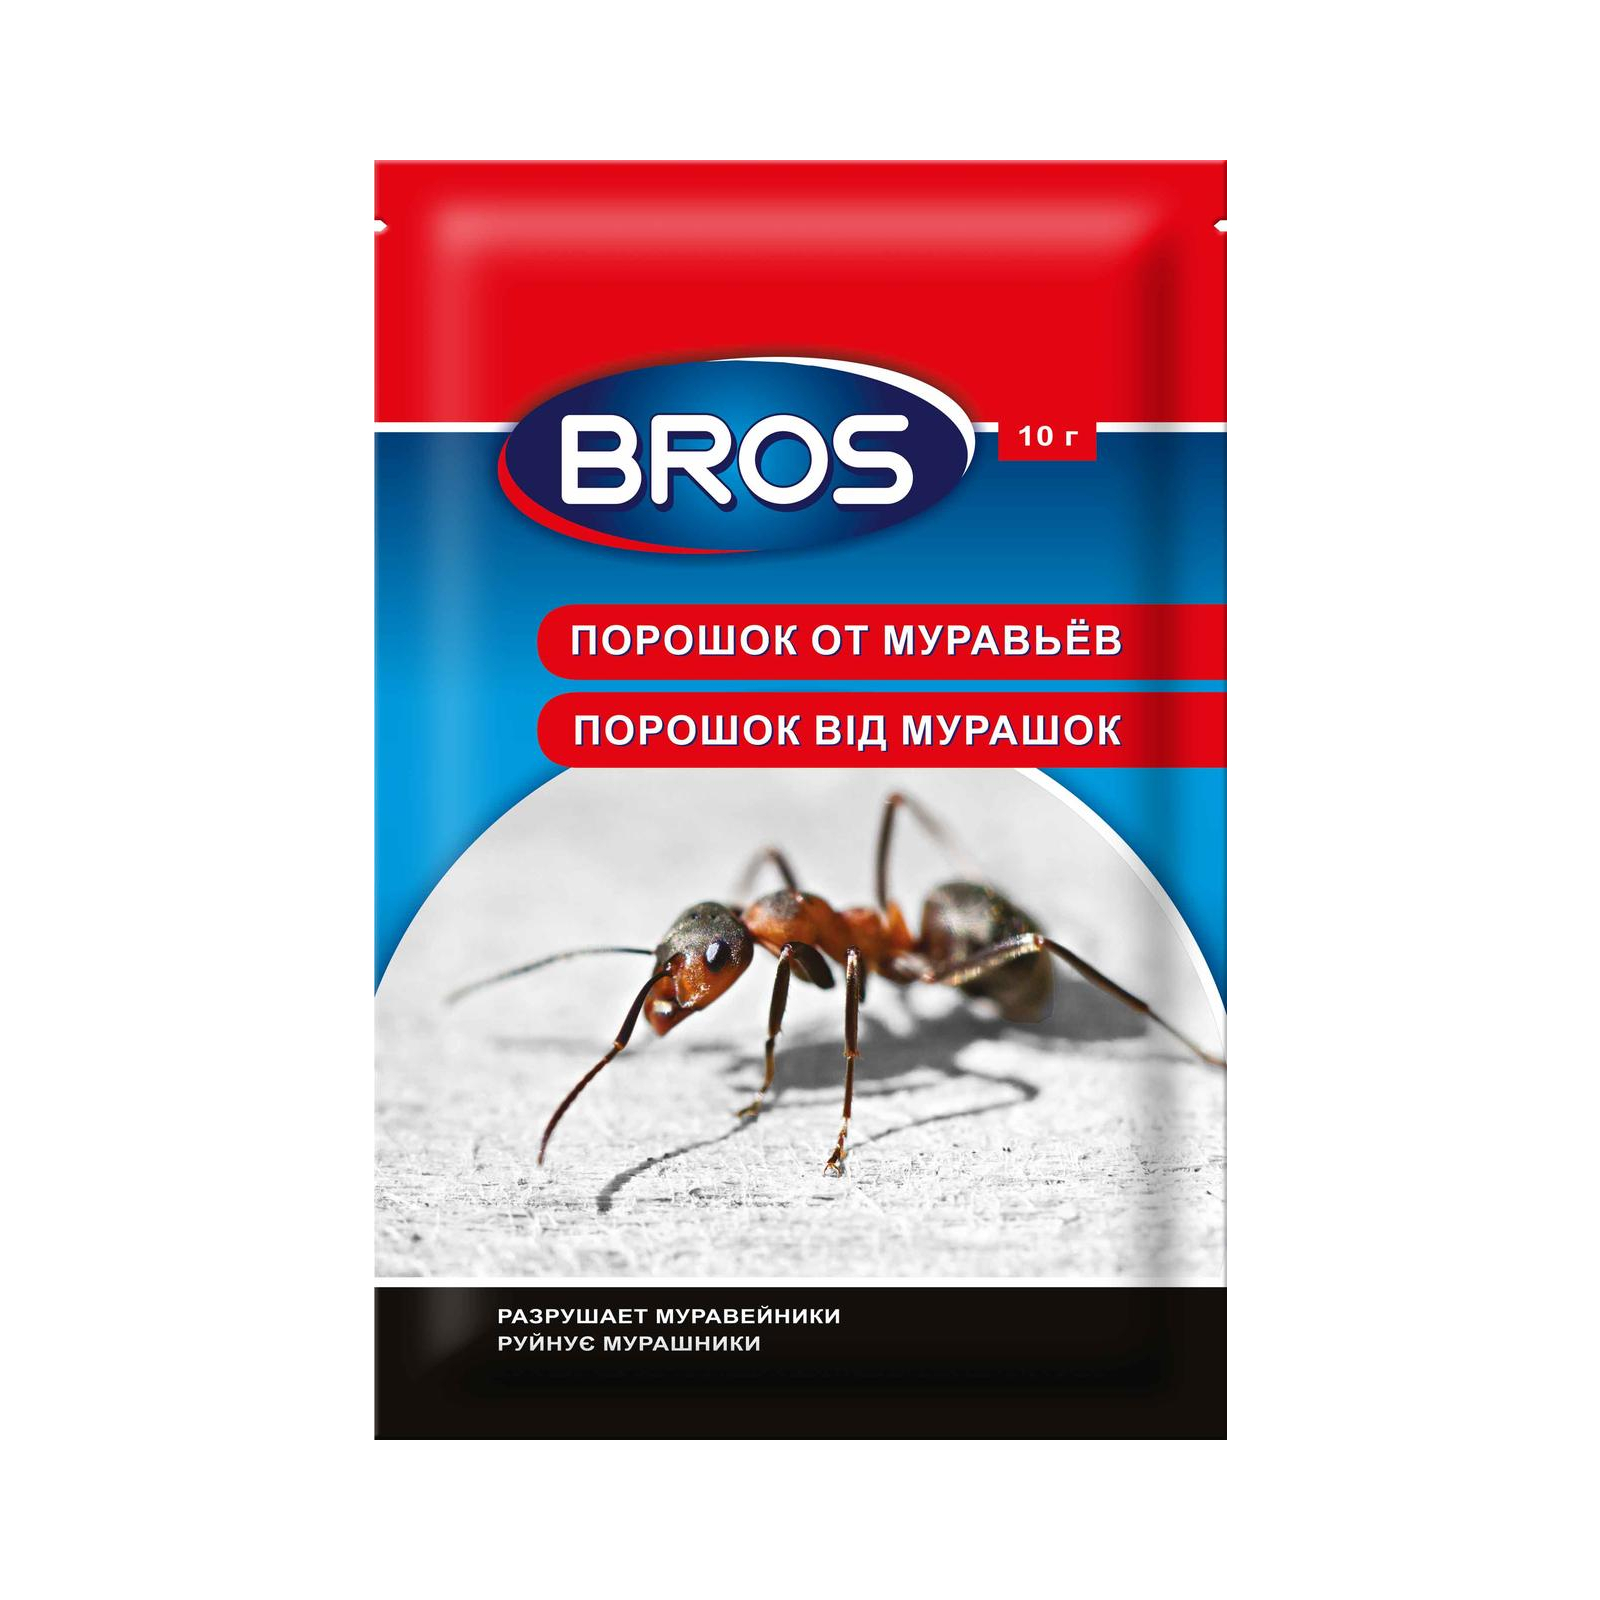 Порошок от насекомых Bros от муравьев 10 г (5904517114159/5904517128279)